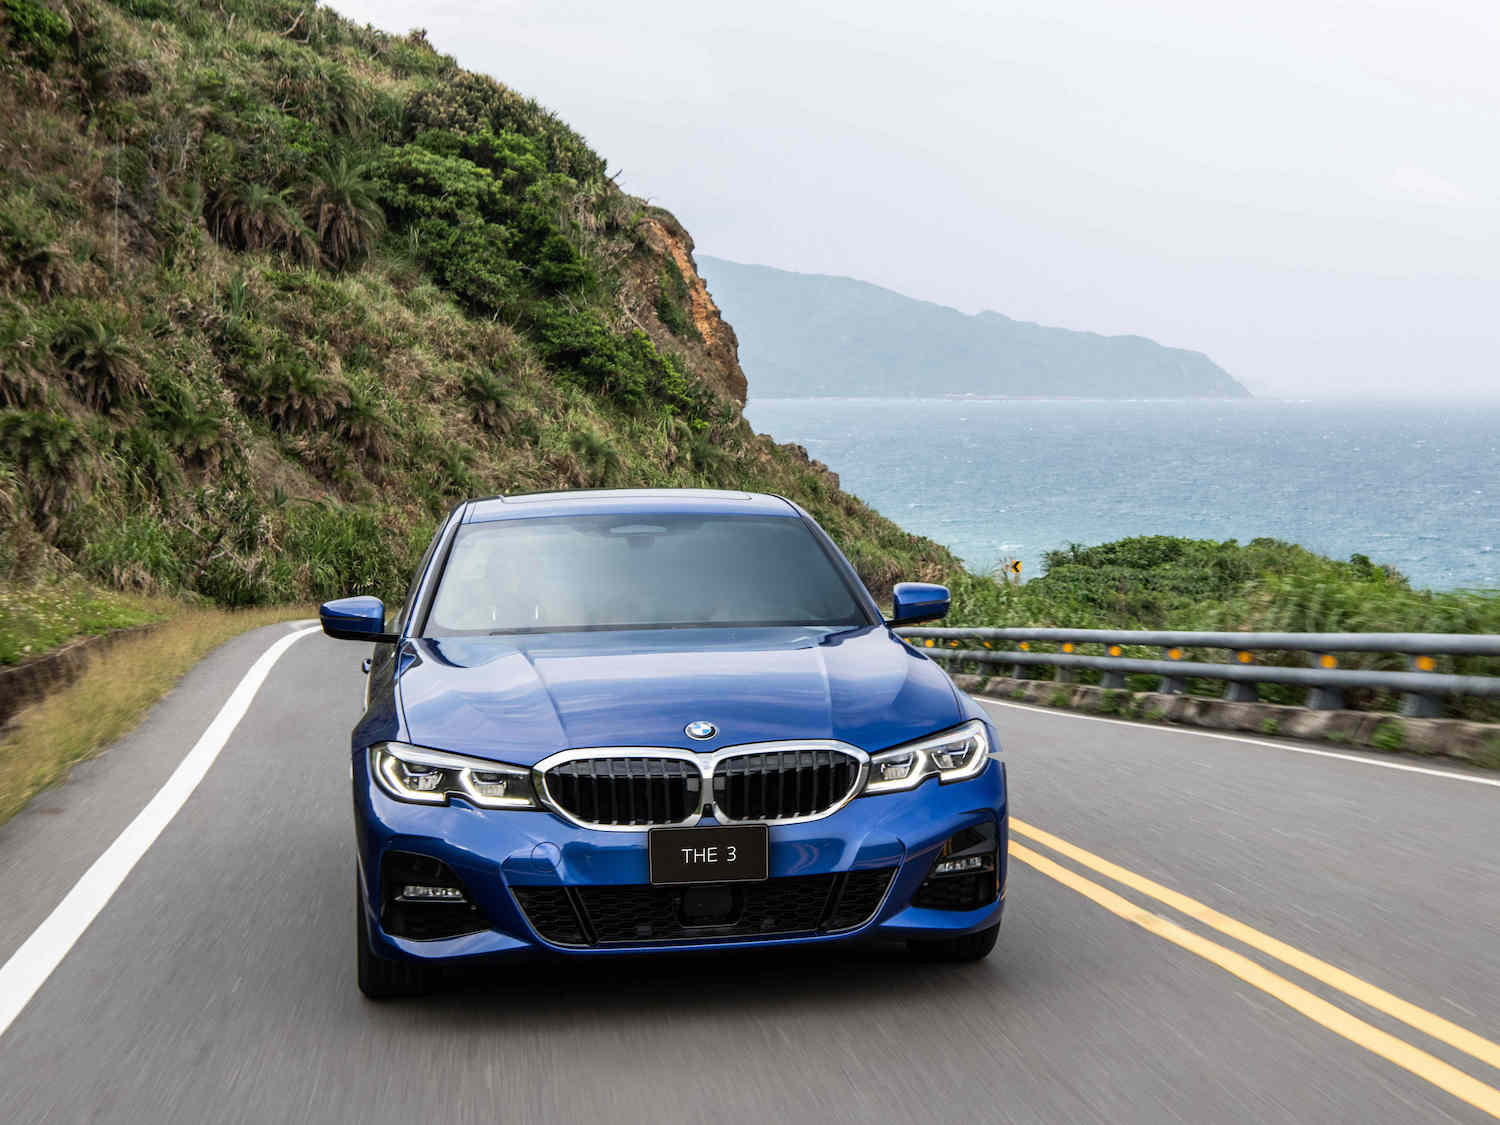 全新 BMW 3系列指定車型享低月付 9,900 元起多元分期方案或 180 萬 60 期 0 利率專案或尊榮租賃專案(含 3 年租賃 0 利率、贈送 3 年牌燃稅)以及 1 年乙式全險。